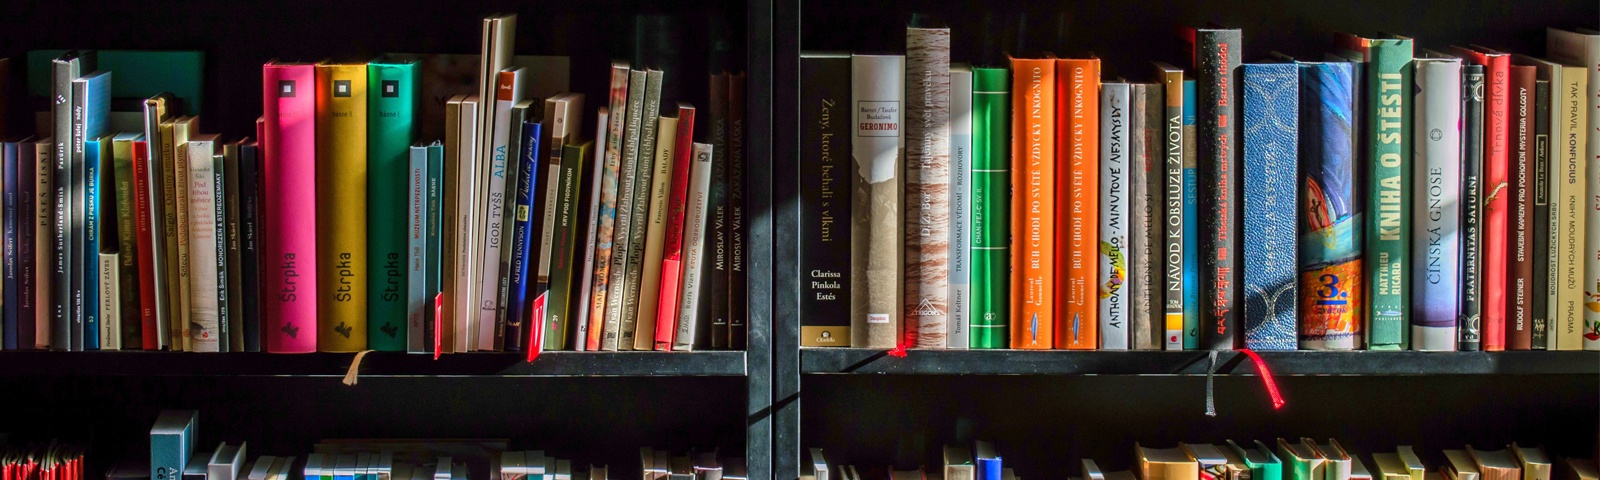 Bilden visar en bokhylla full med böcker